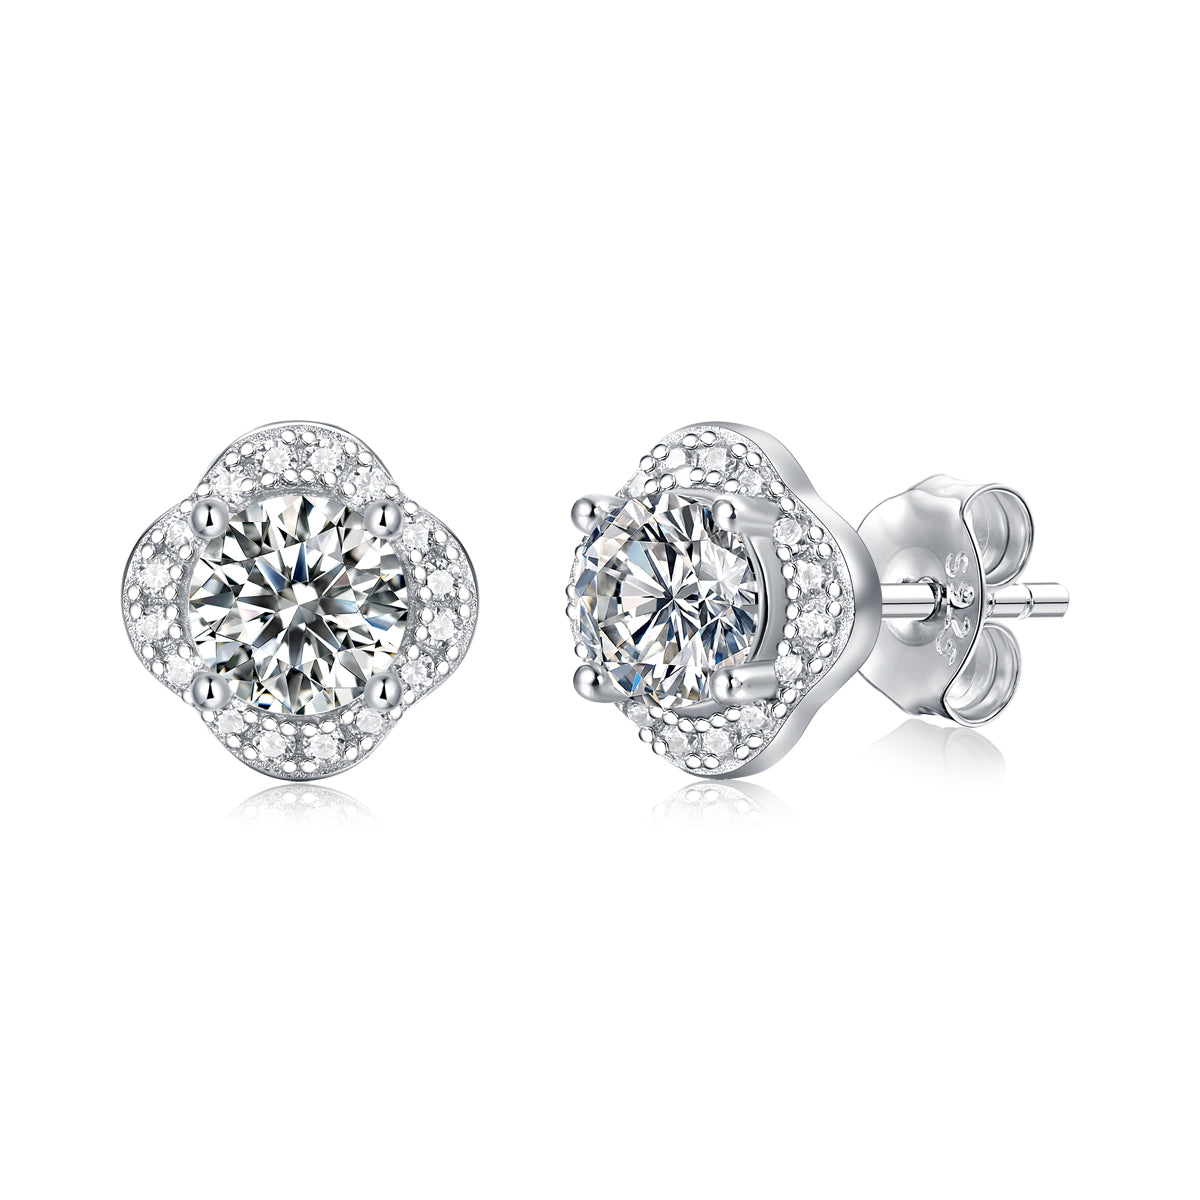 FairyLocus "Blossom" Round Cut Moissanite Diamond Stud Earrings D Color VVS1 FLZZERMS08 FairyLocus